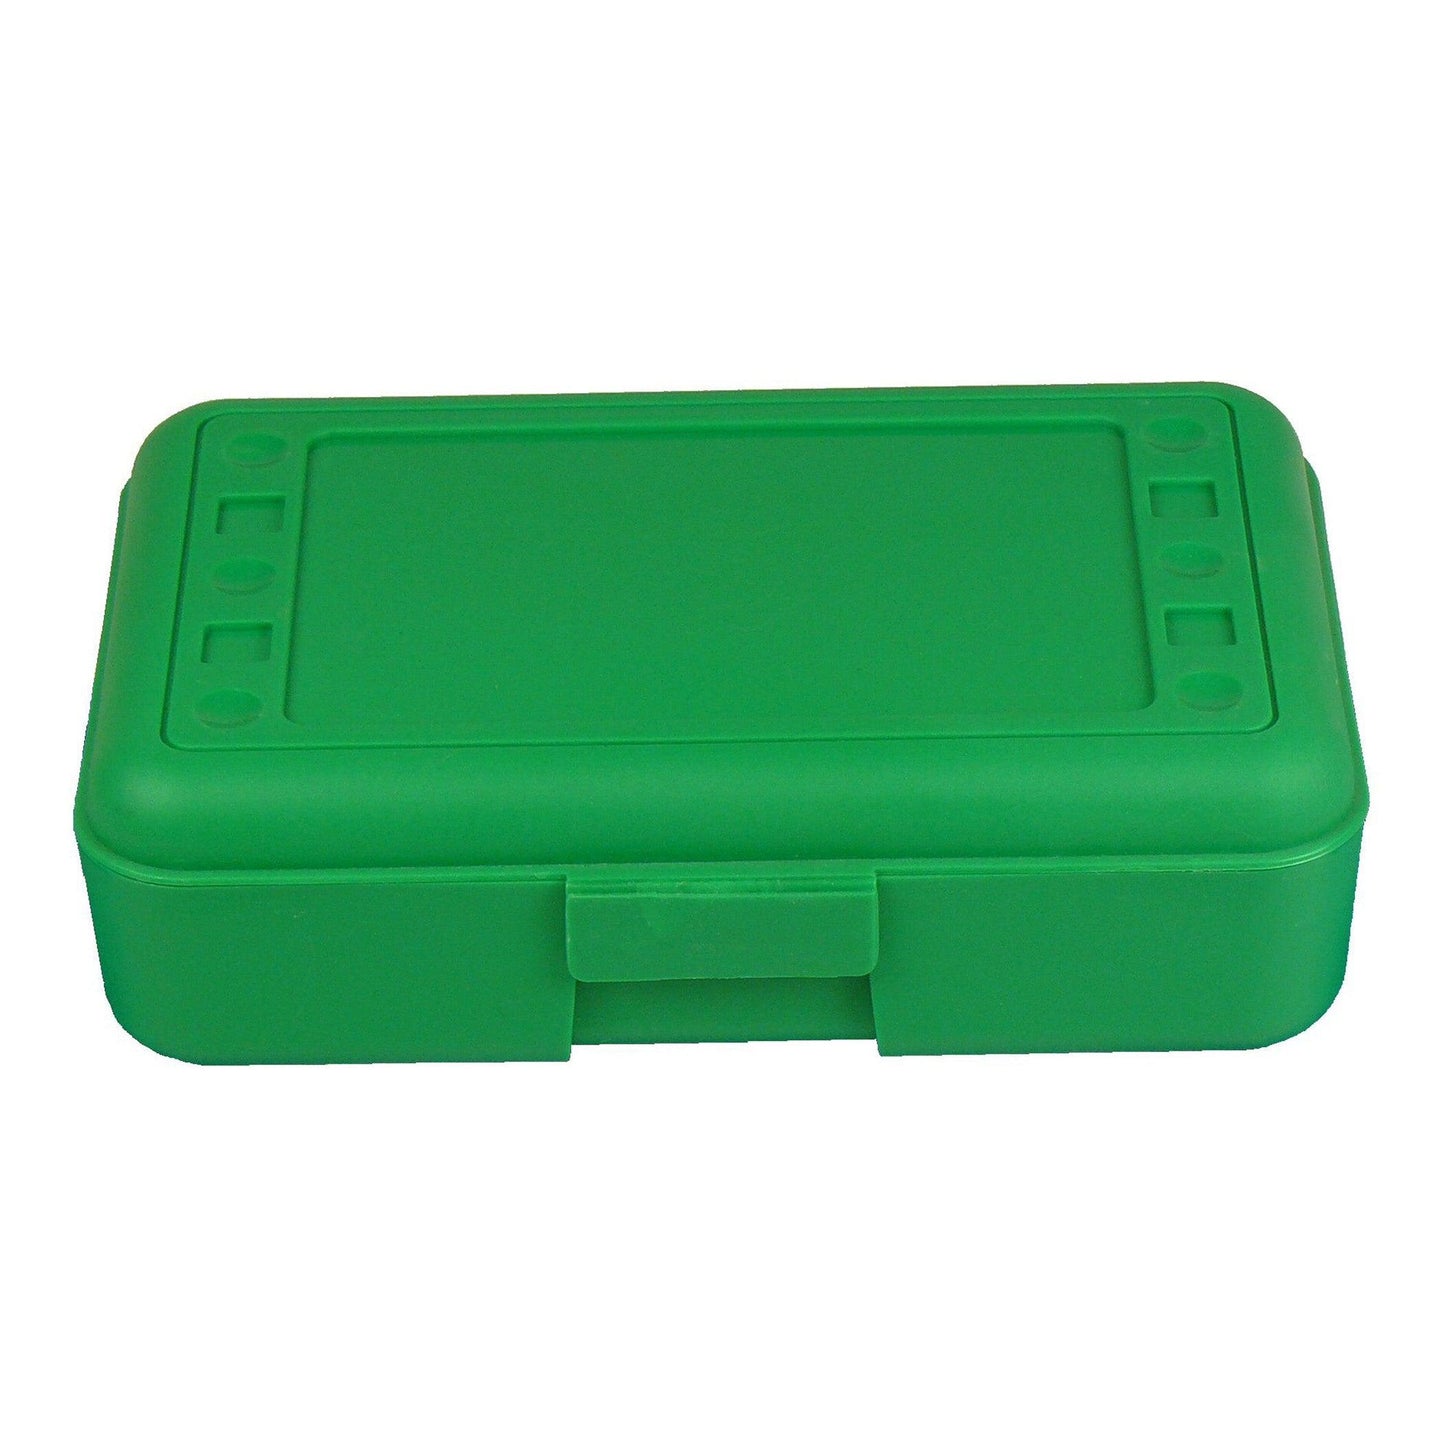 Pencil Box, Green, Pack of 12 - Loomini